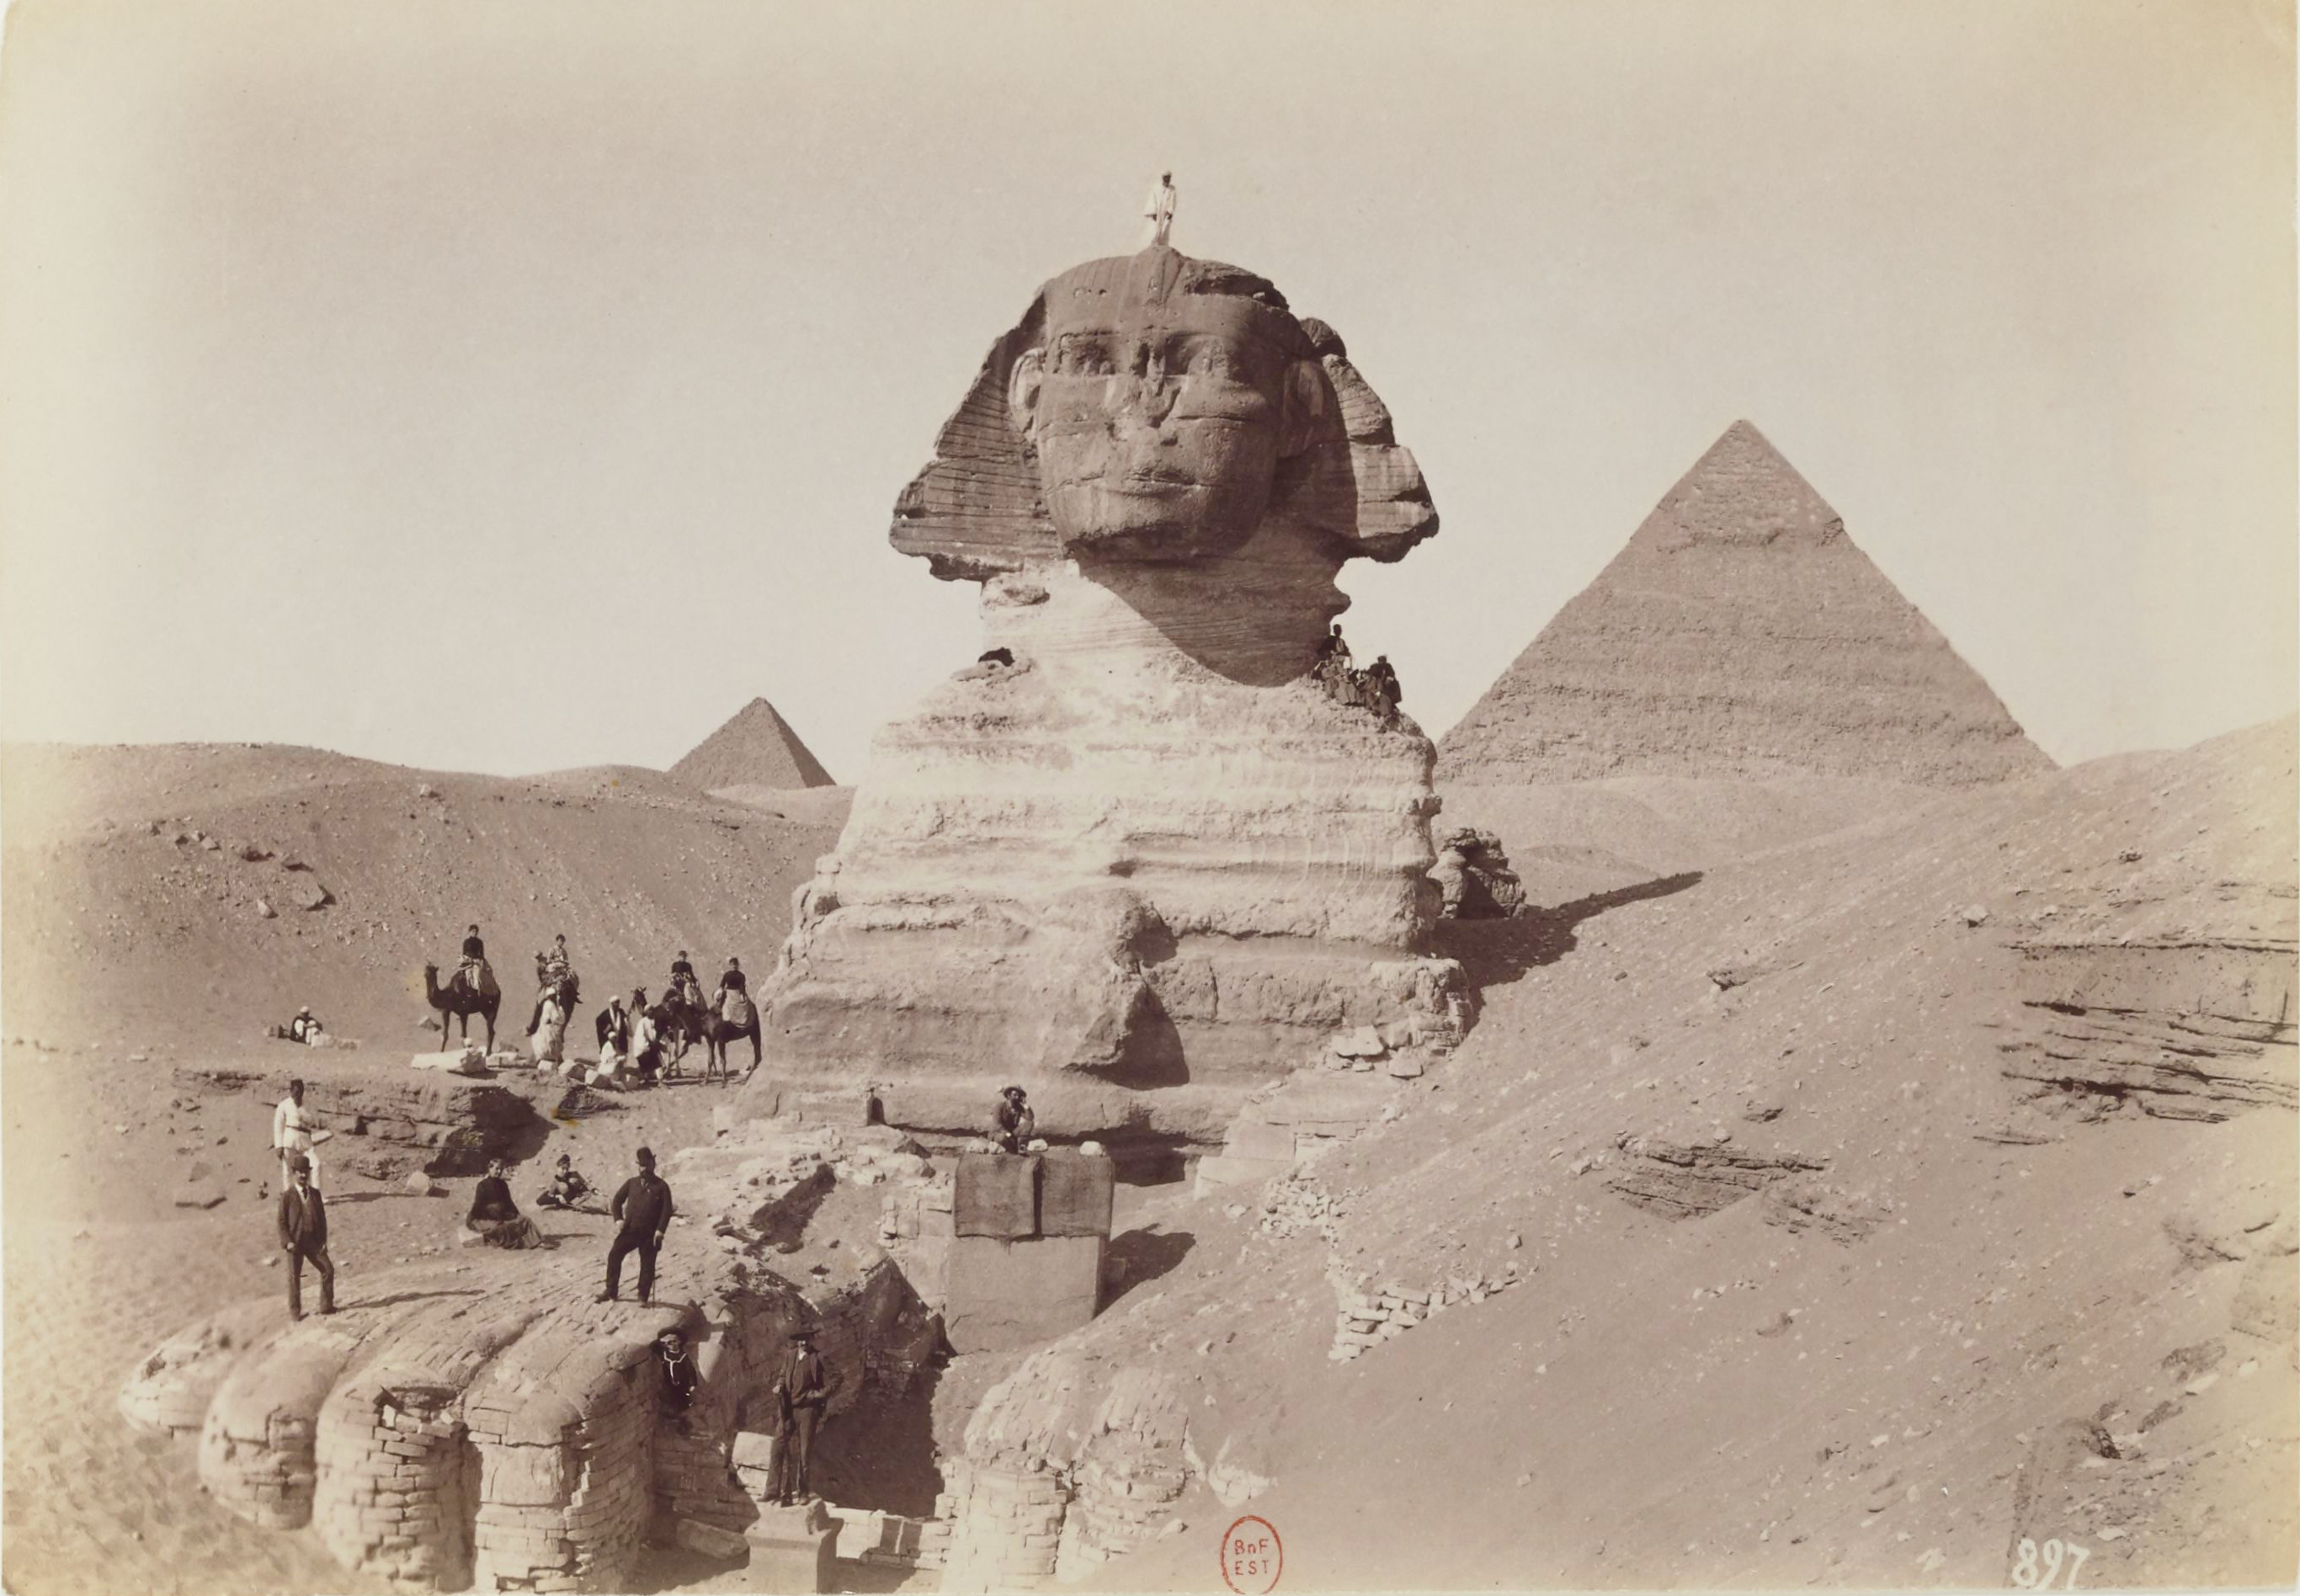 The Great Sphinx of Giza, circa 1880s, by Beniamino Facchinelli.